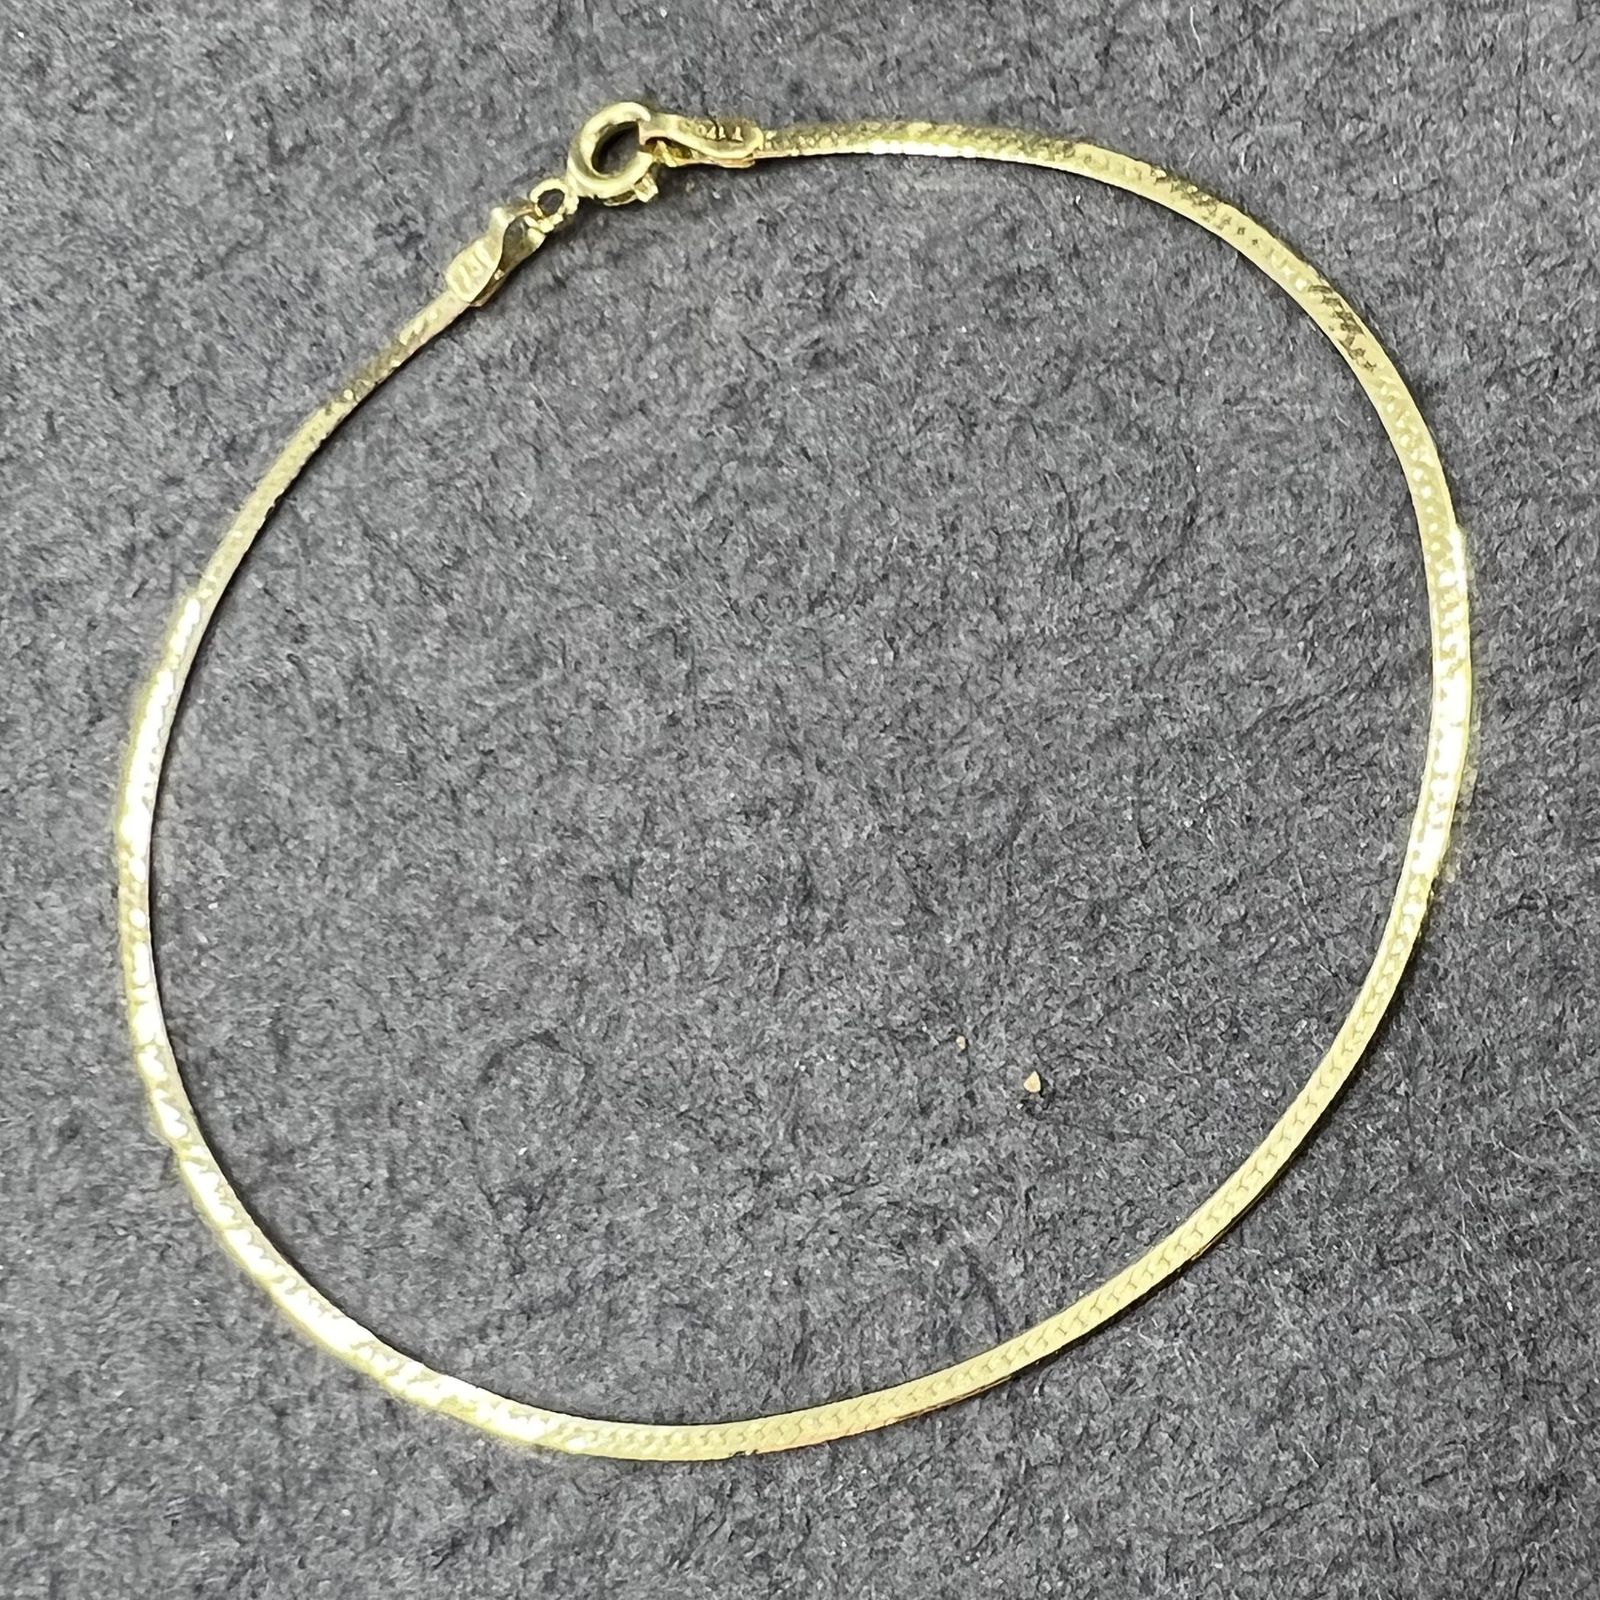 دستبند طلا 18 عیار زنانه دوست خوب مدل هرینگبون کد dk080 -  - 4